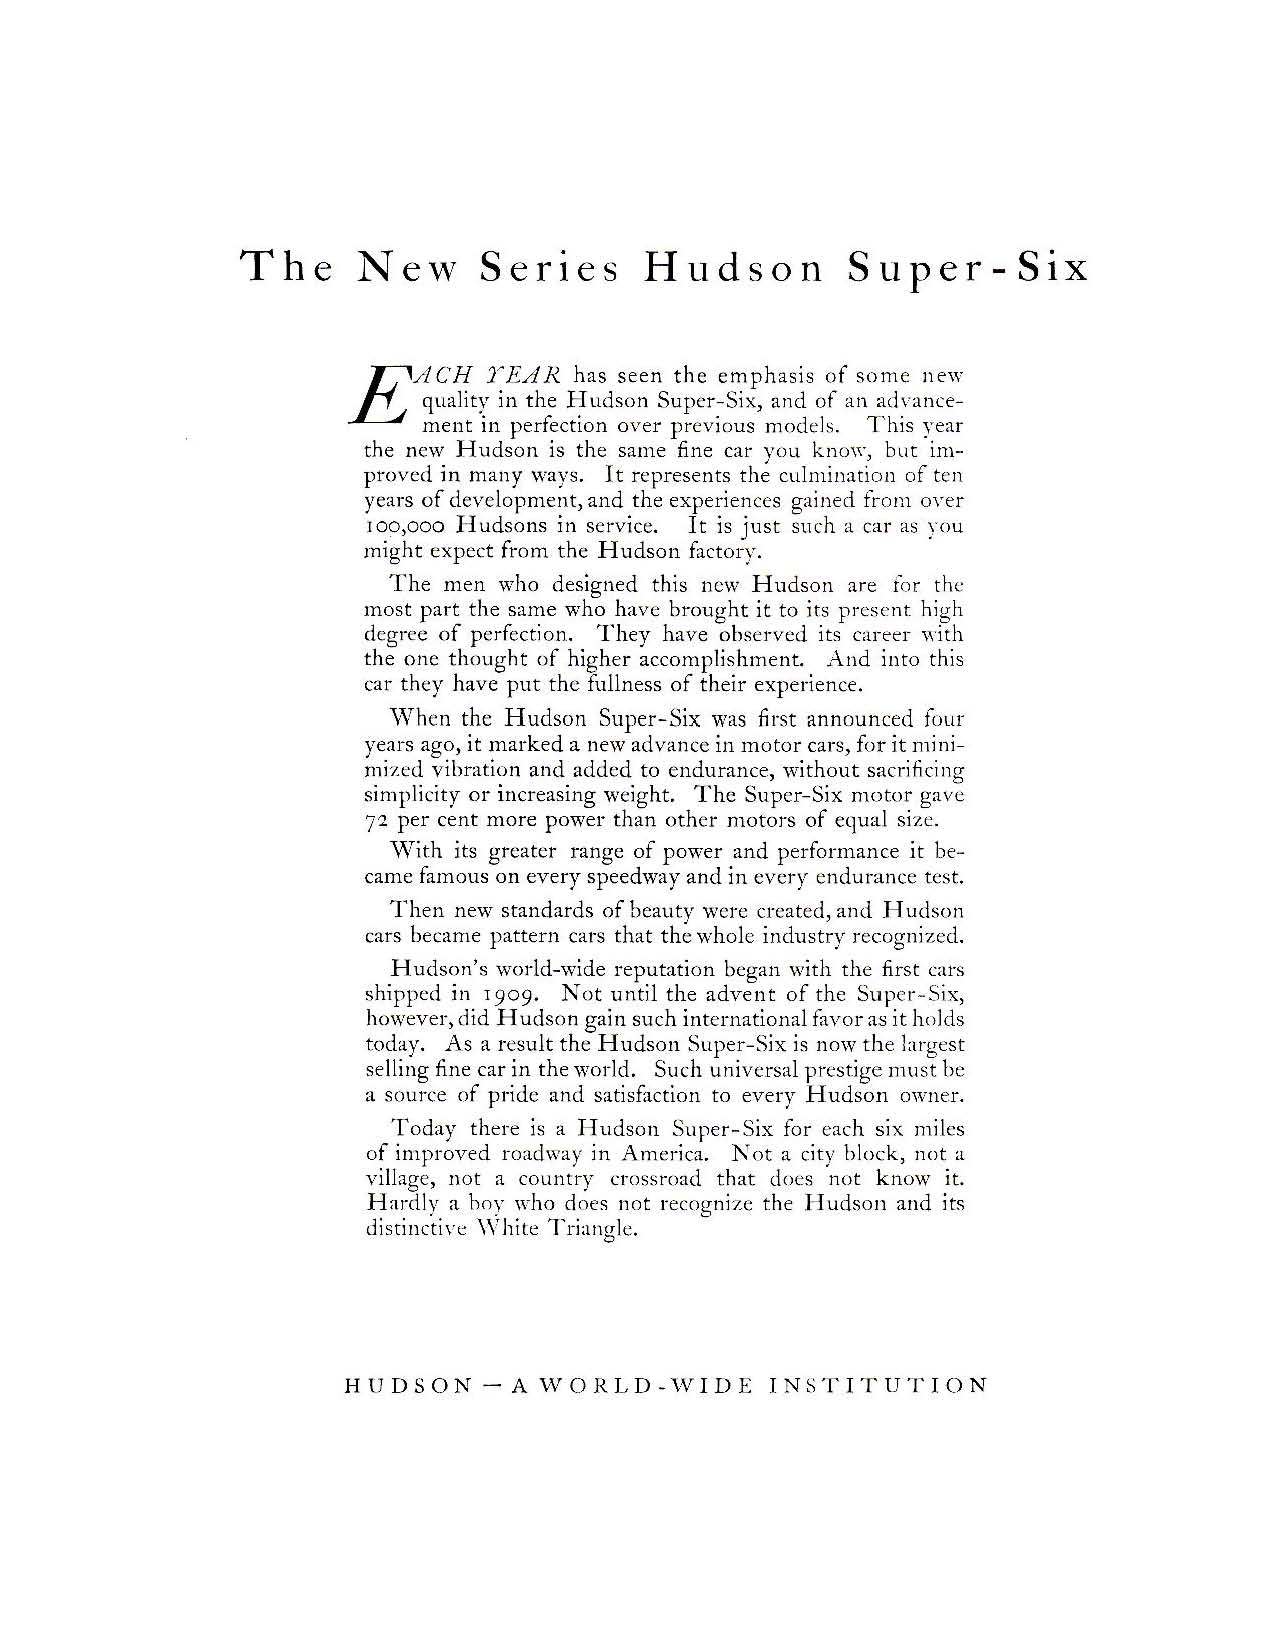 1919 Hudson Super-Six-05